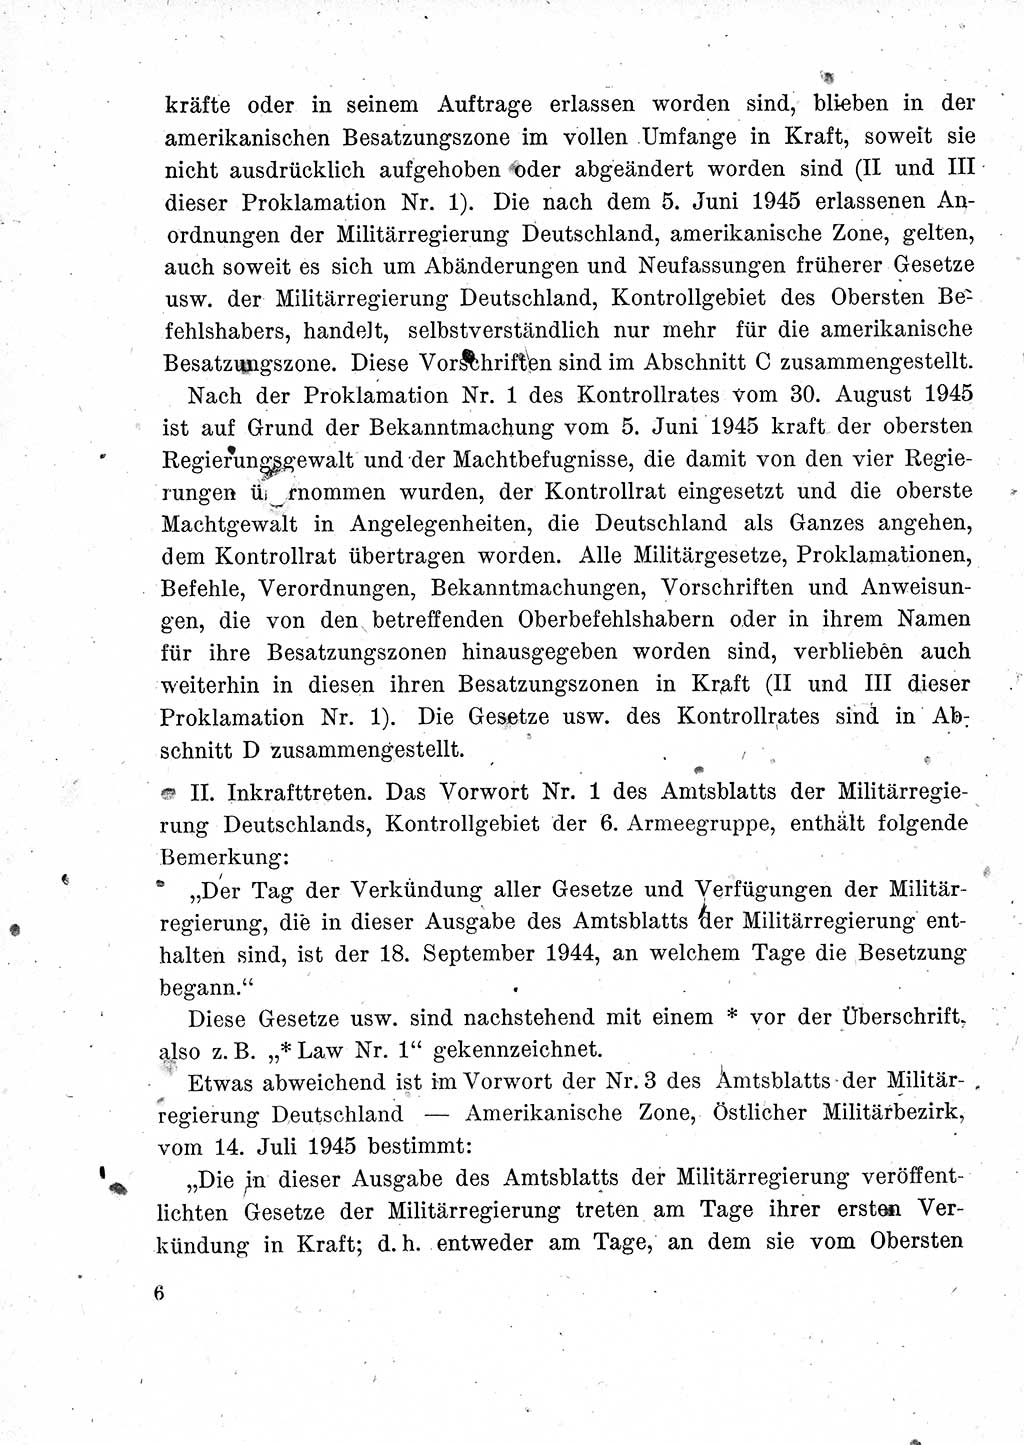 Das Recht der Besatzungsmacht (Deutschland), Proklamationen, Deklerationen, Verordnungen, Gesetze und Bekanntmachungen 1947, Seite 6 (R. Bes. Dtl. 1947, S. 6)